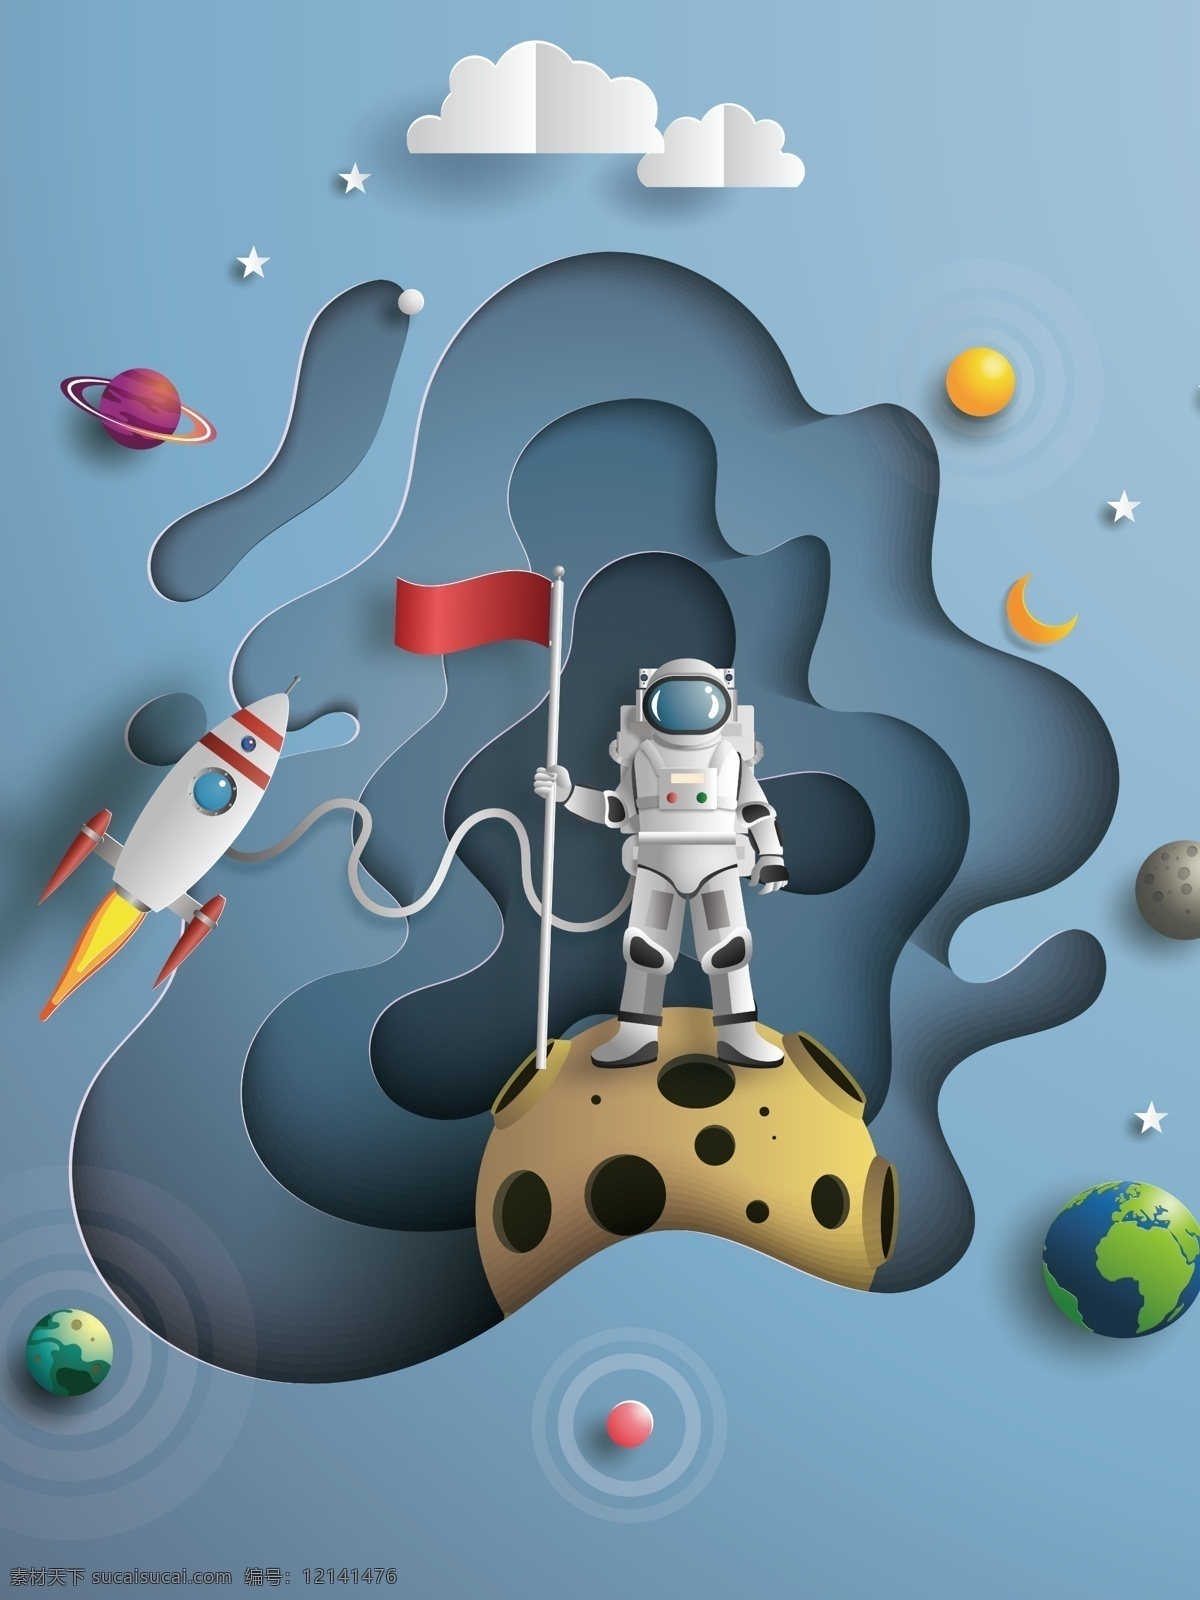 现代 卡通 宇航员 装饰画 北欧 太空 动漫 儿童房 客厅 宇宙 星际 漫游 星球 太空人 玄关 组合画 地球 月球 星系 抽象 轻奢 环境设计 无框画